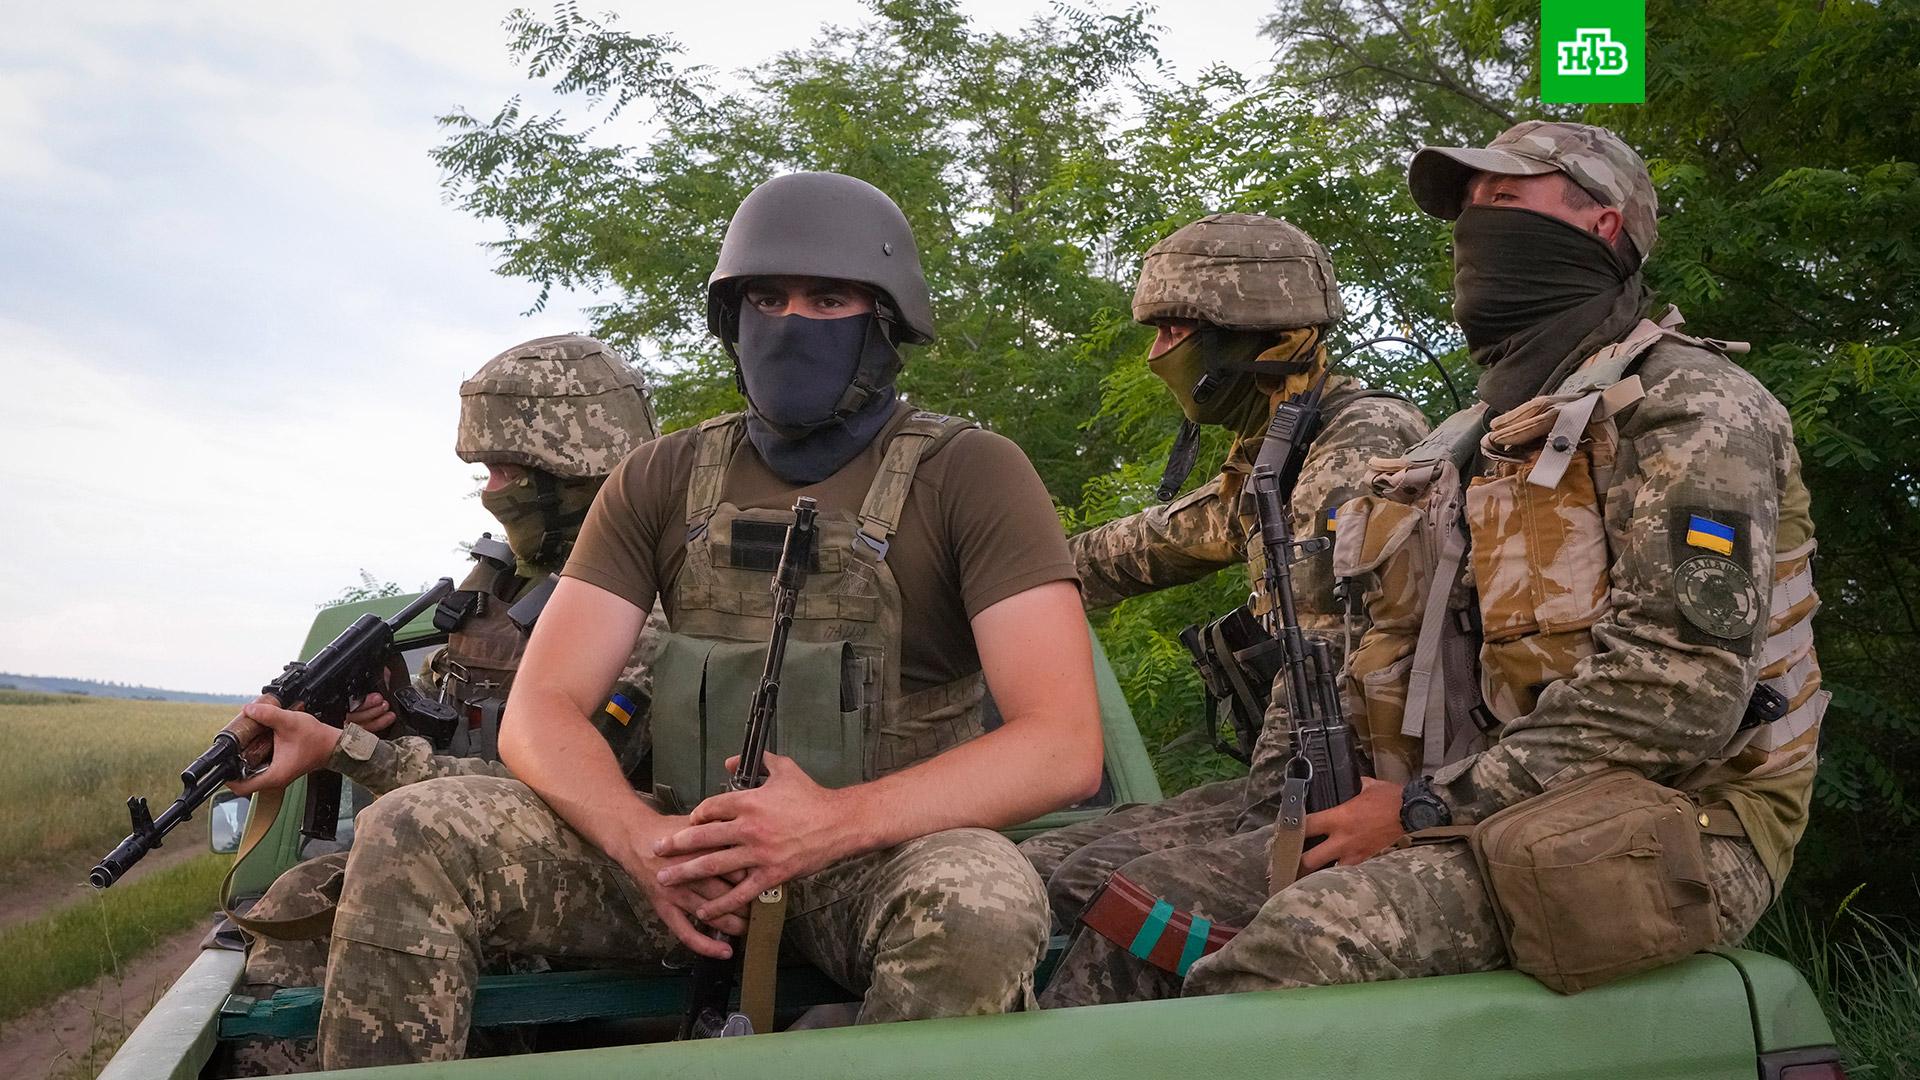 "Такого раньше не было". С чем столкнулись иностранные наемники в Донбассе украина